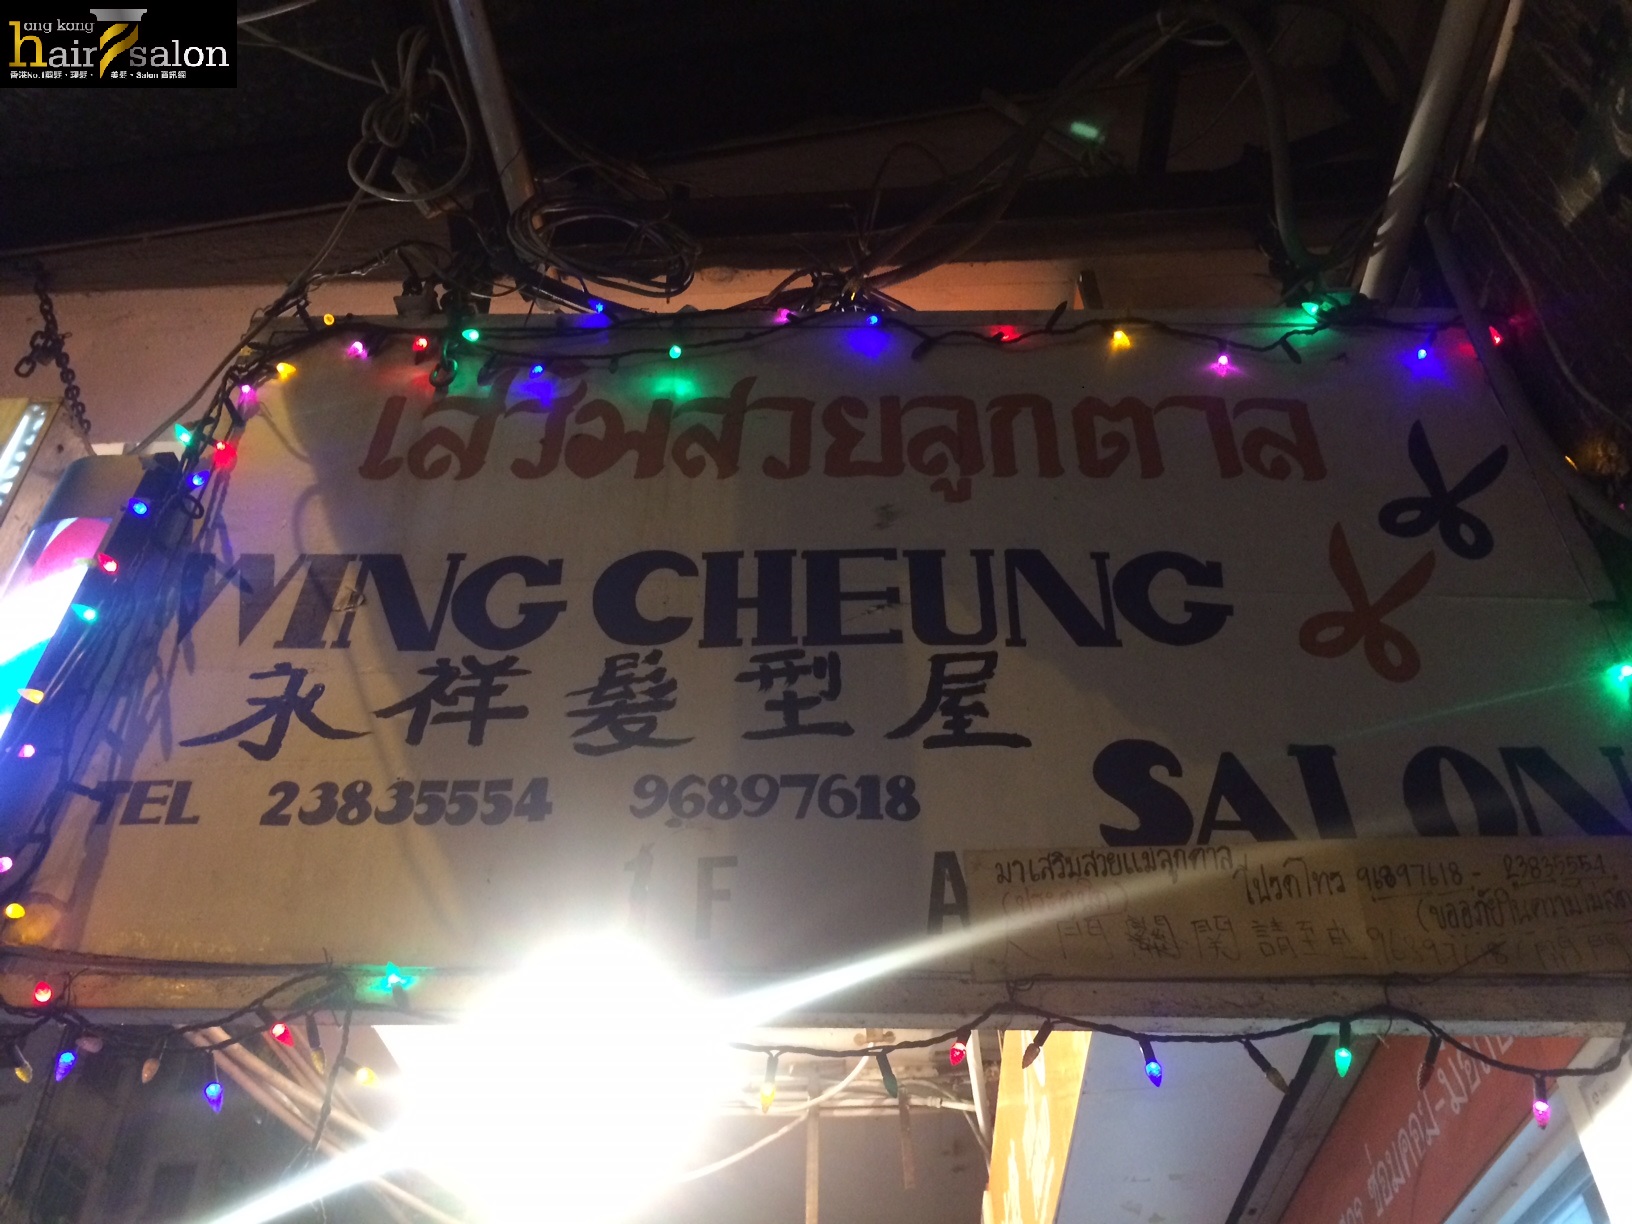 電髮/負離子: Wing Cheung Salon 永祥髮型屋 